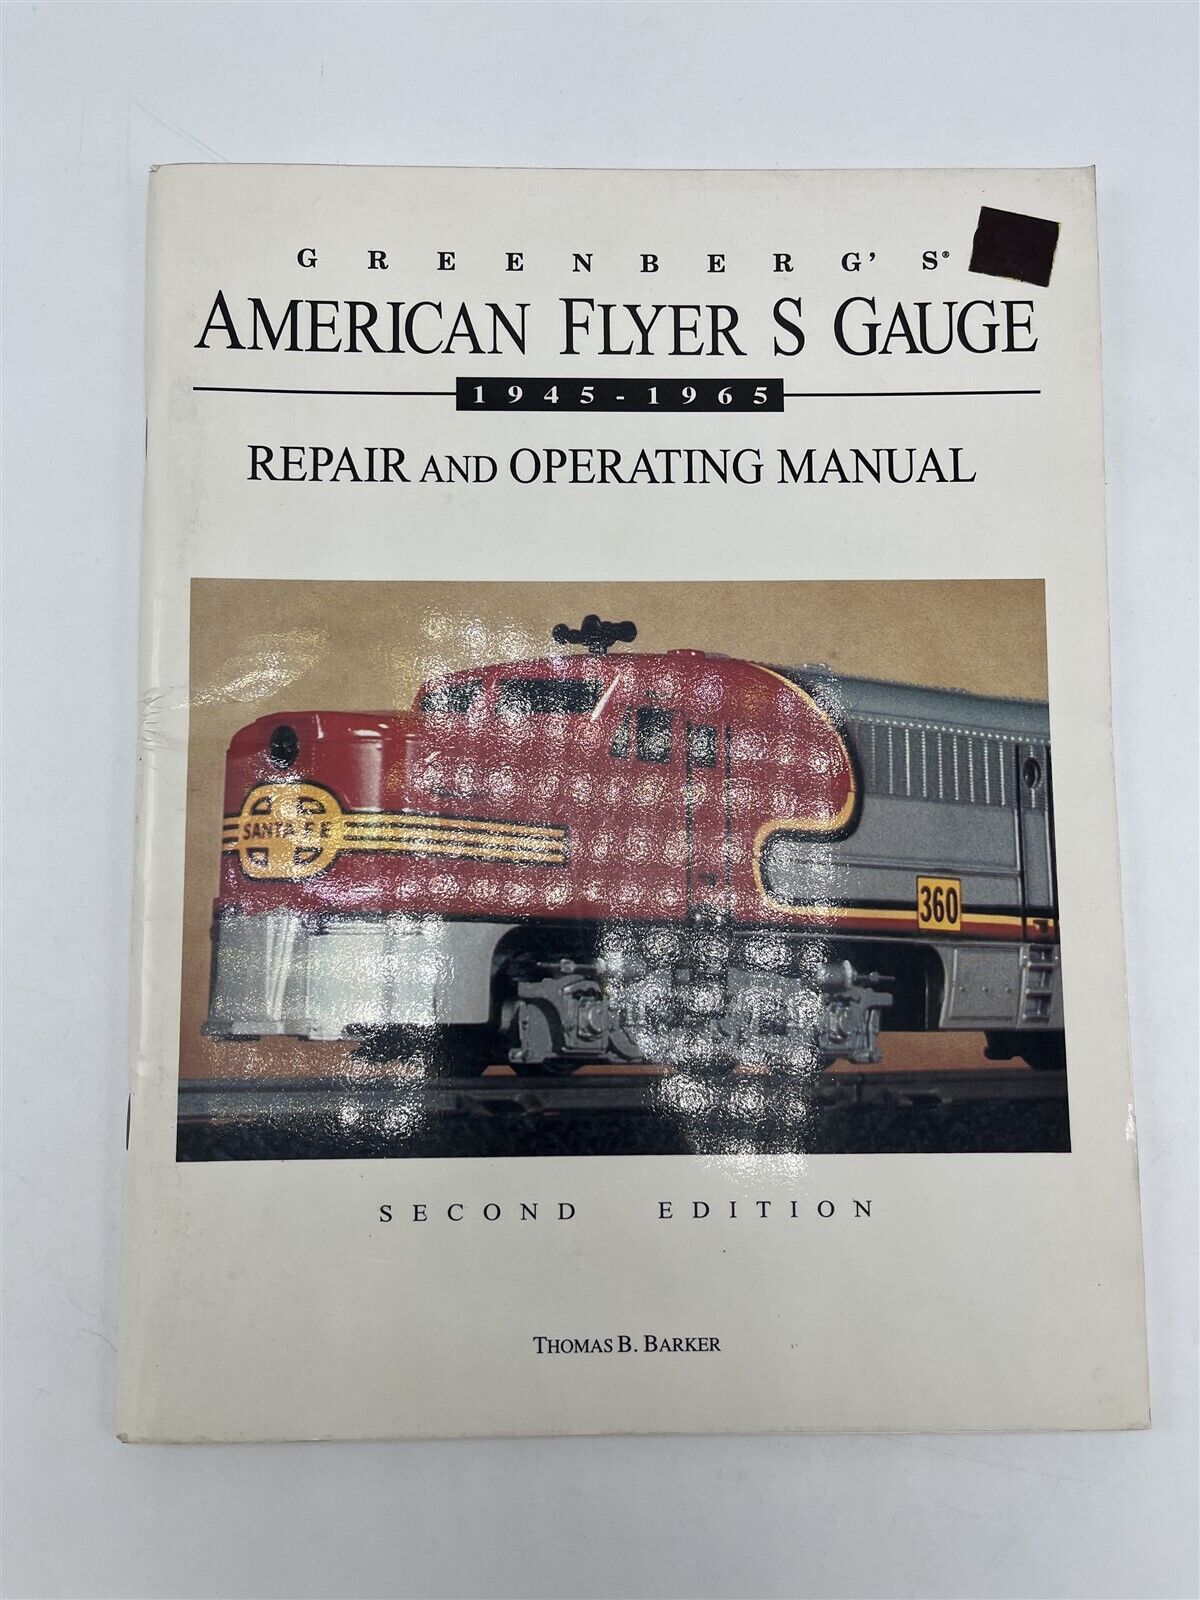 American Flyer S Gauge 10-8330